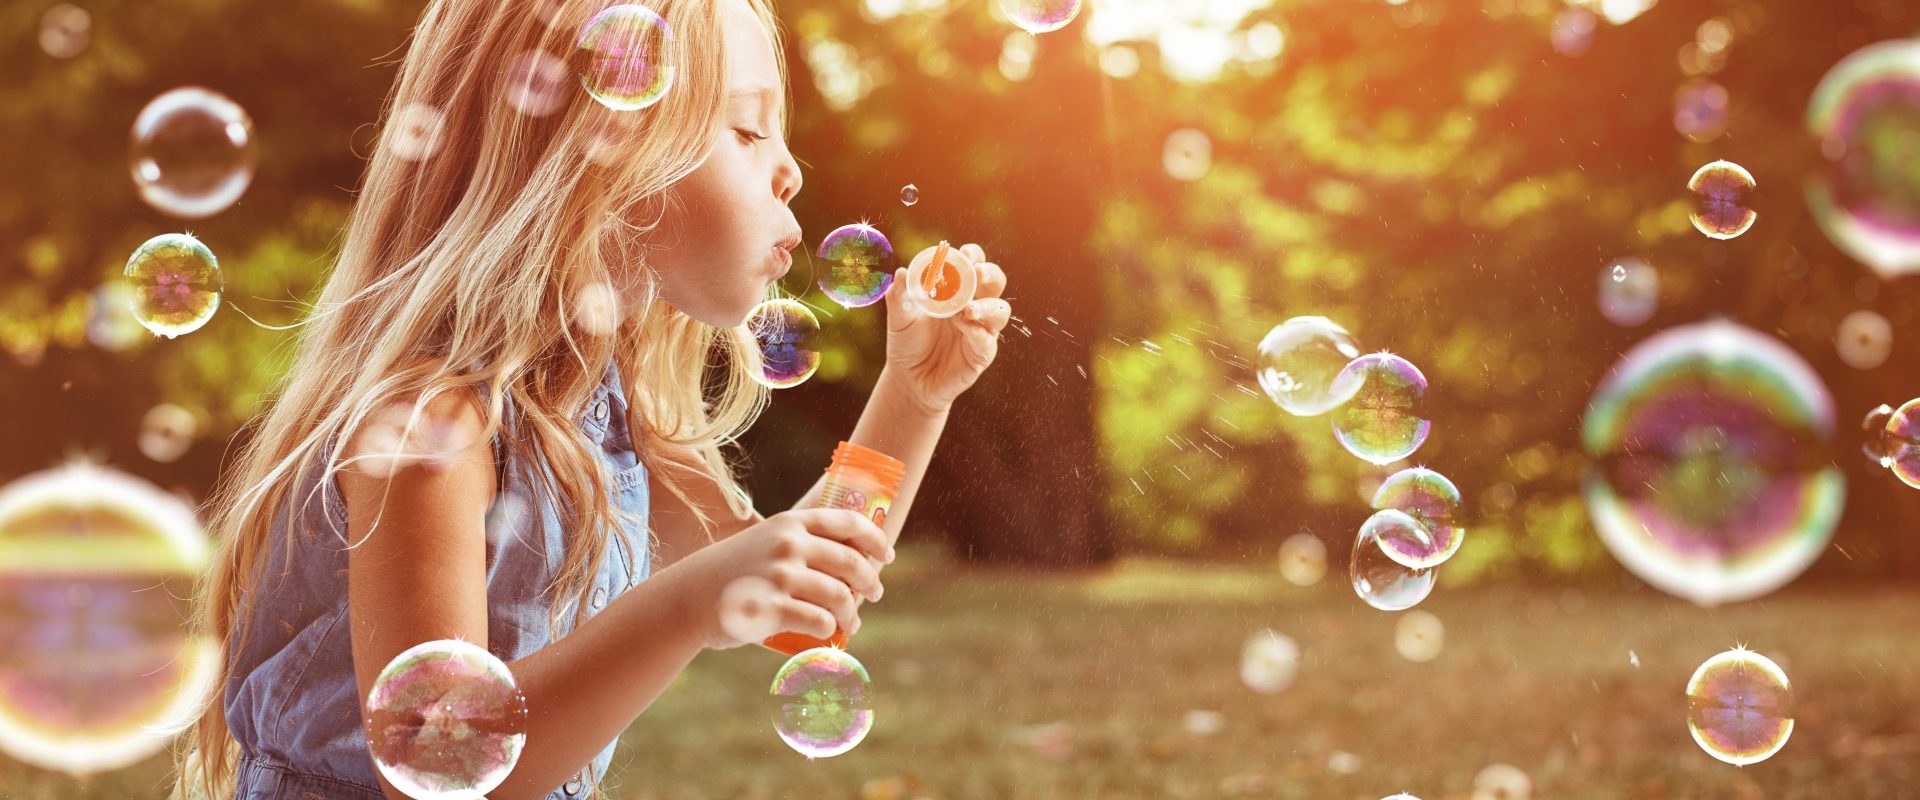 Astma u dzieci - jak rozpoznać objawy i jak leczyć? Blondwłosa dziewczynka puszcza bańki mydlane w letniej sielankowej scenerii.